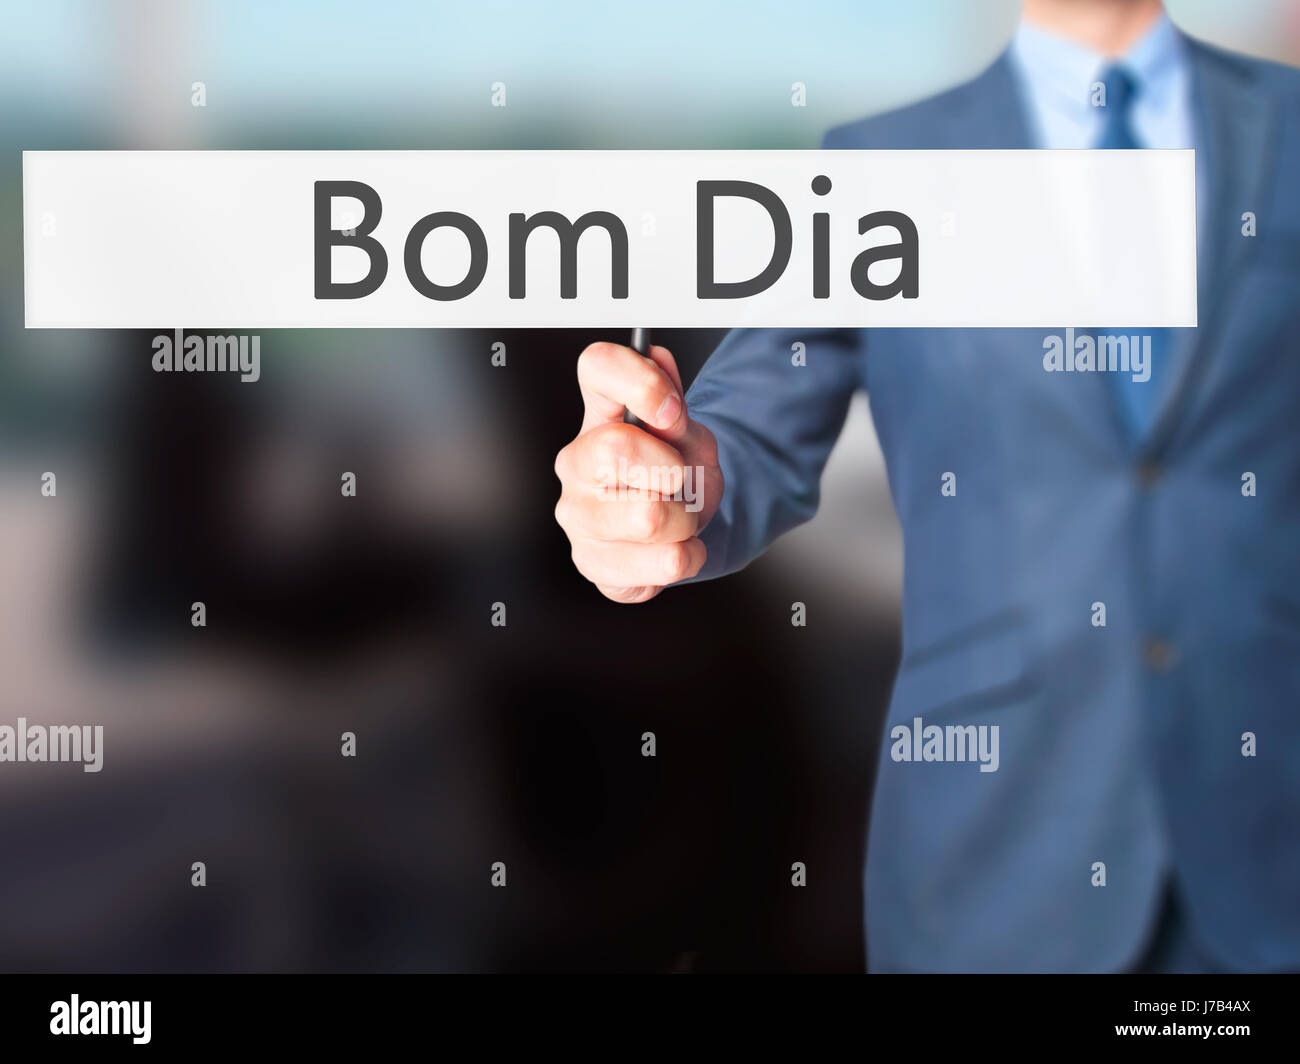 Bom Dia (en portugués: Buenos días) - El empresario mano sujetando firme.  Negocios, tecnología, internet concepto. Stock Photo Fotografía de stock -  Alamy